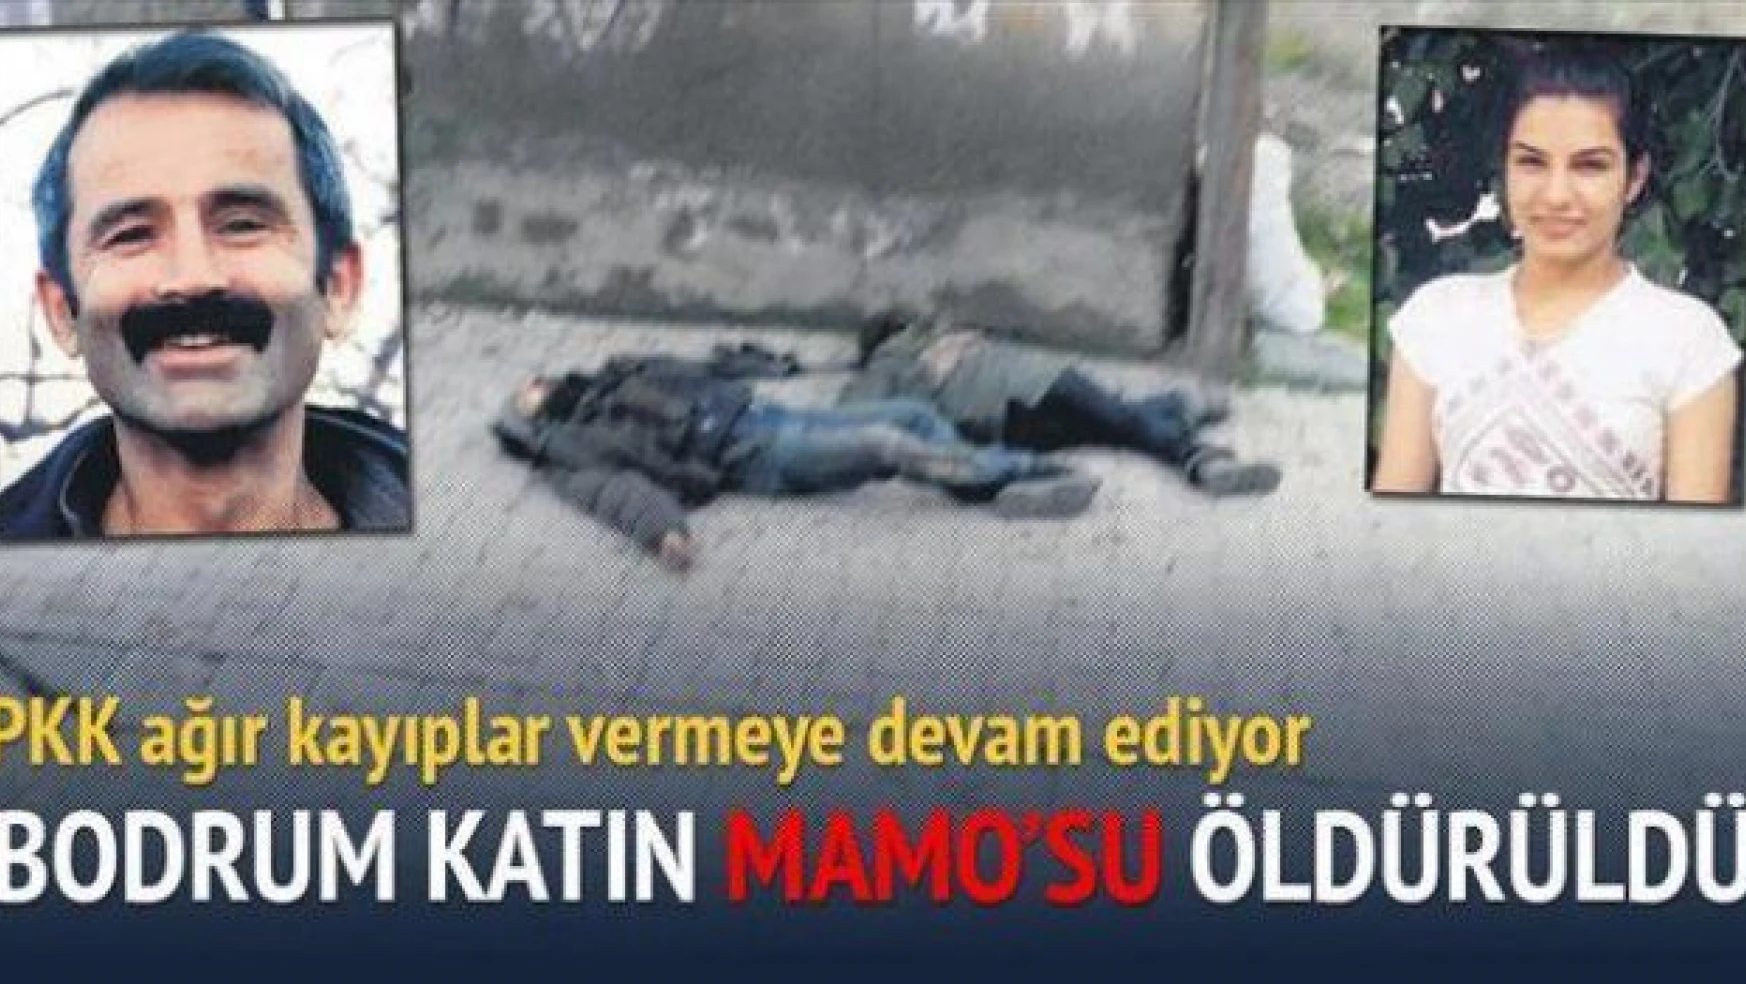 PKK'ya bir darbe daha! Bodrum katın Mamo'su öldürüldü